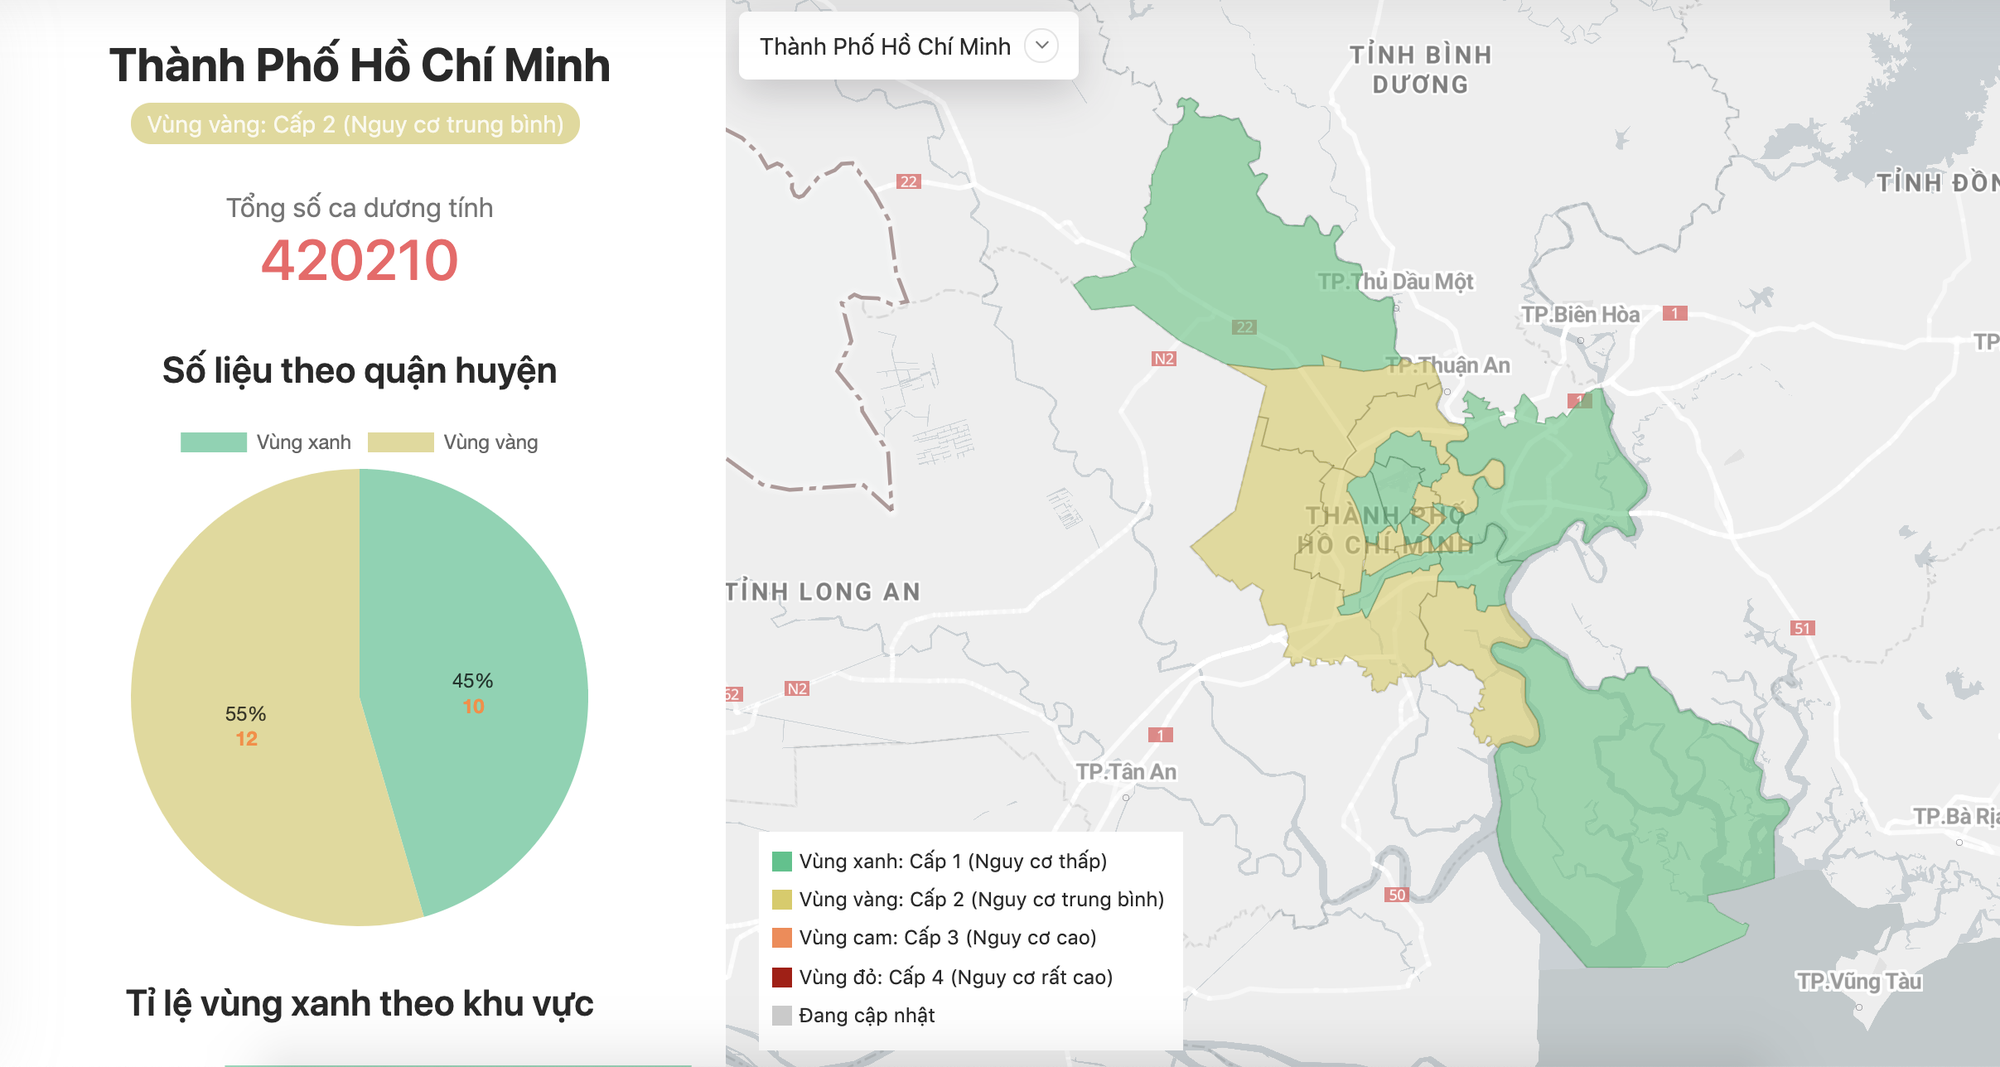 TP Hồ Chí Minh đang có những chuyển biến lớn về cấp độ dịch COVID-